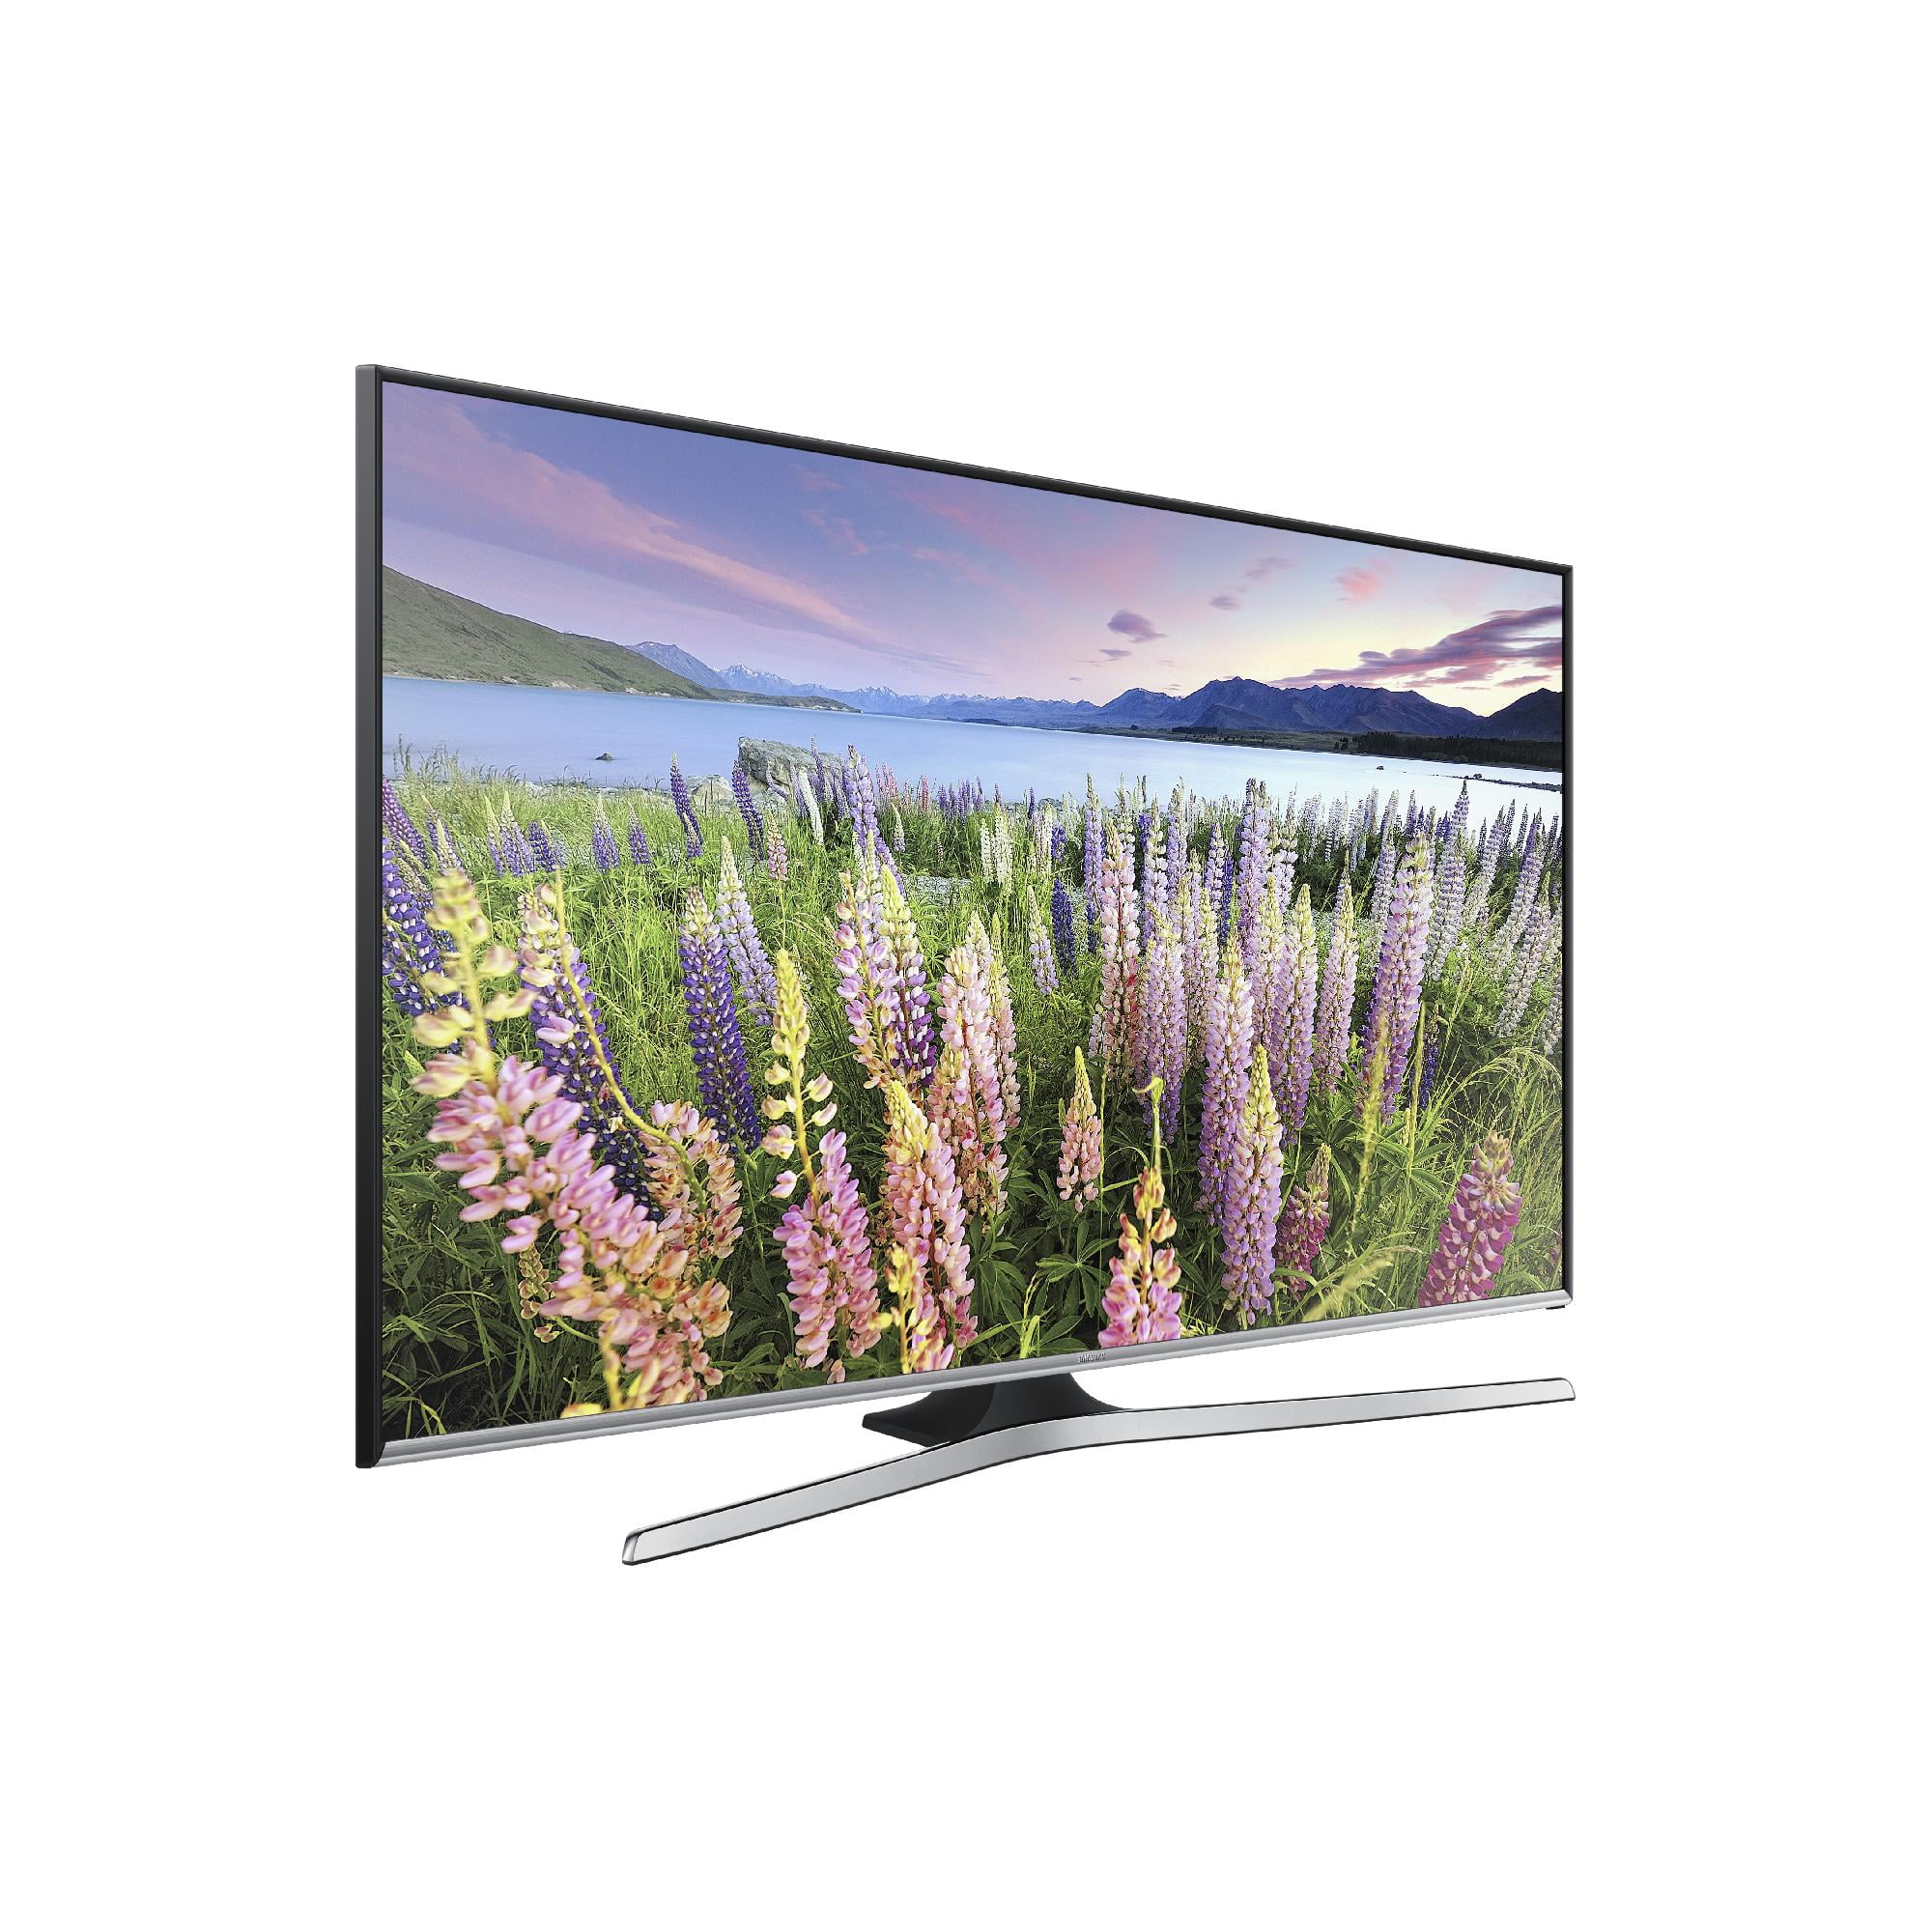 Samsung UN50J5500AF - 50" Diagonal Class (49.5" viewable) - 5 Series TV - Smart TV - 1080p (Full HD) 1920 x 1080 - black - Walmart.com